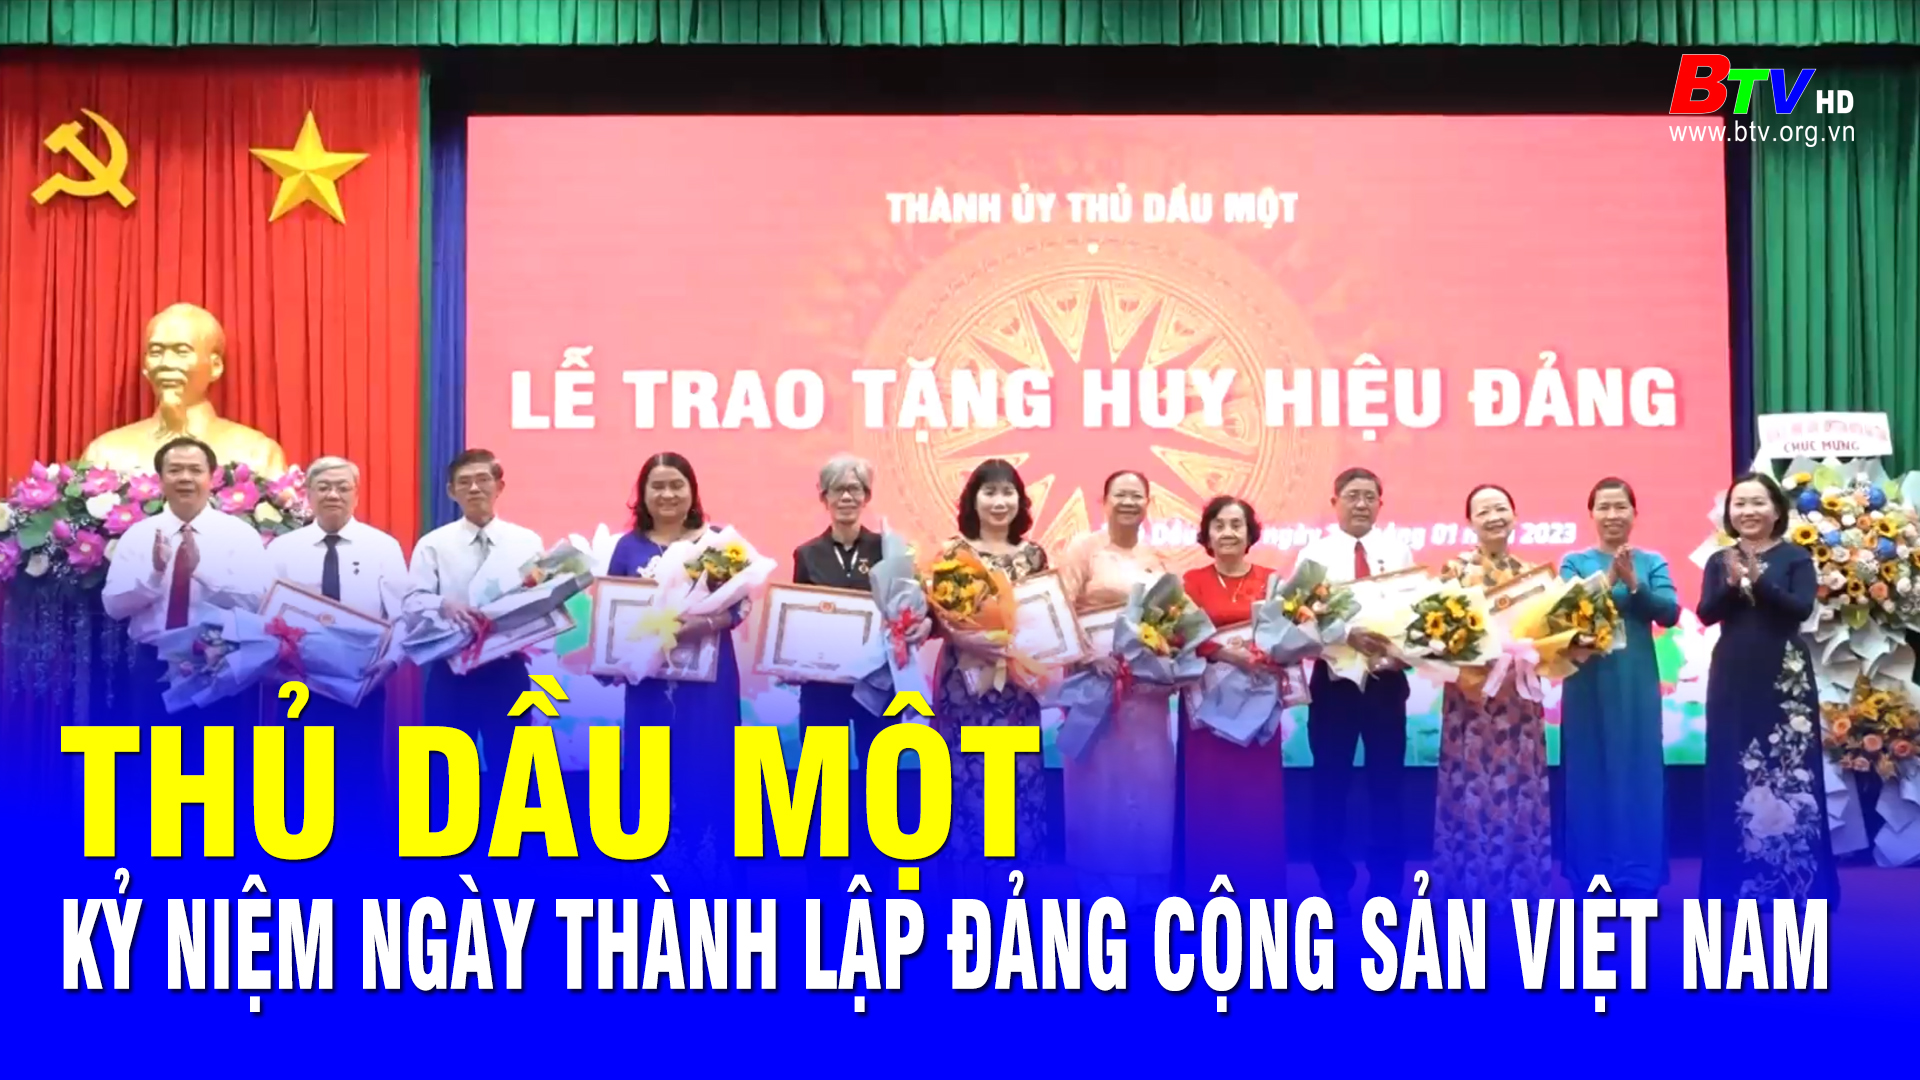 Thủ Dầu Một kỷ niệm Ngày thành lập Đảng Cộng sản Việt Nam